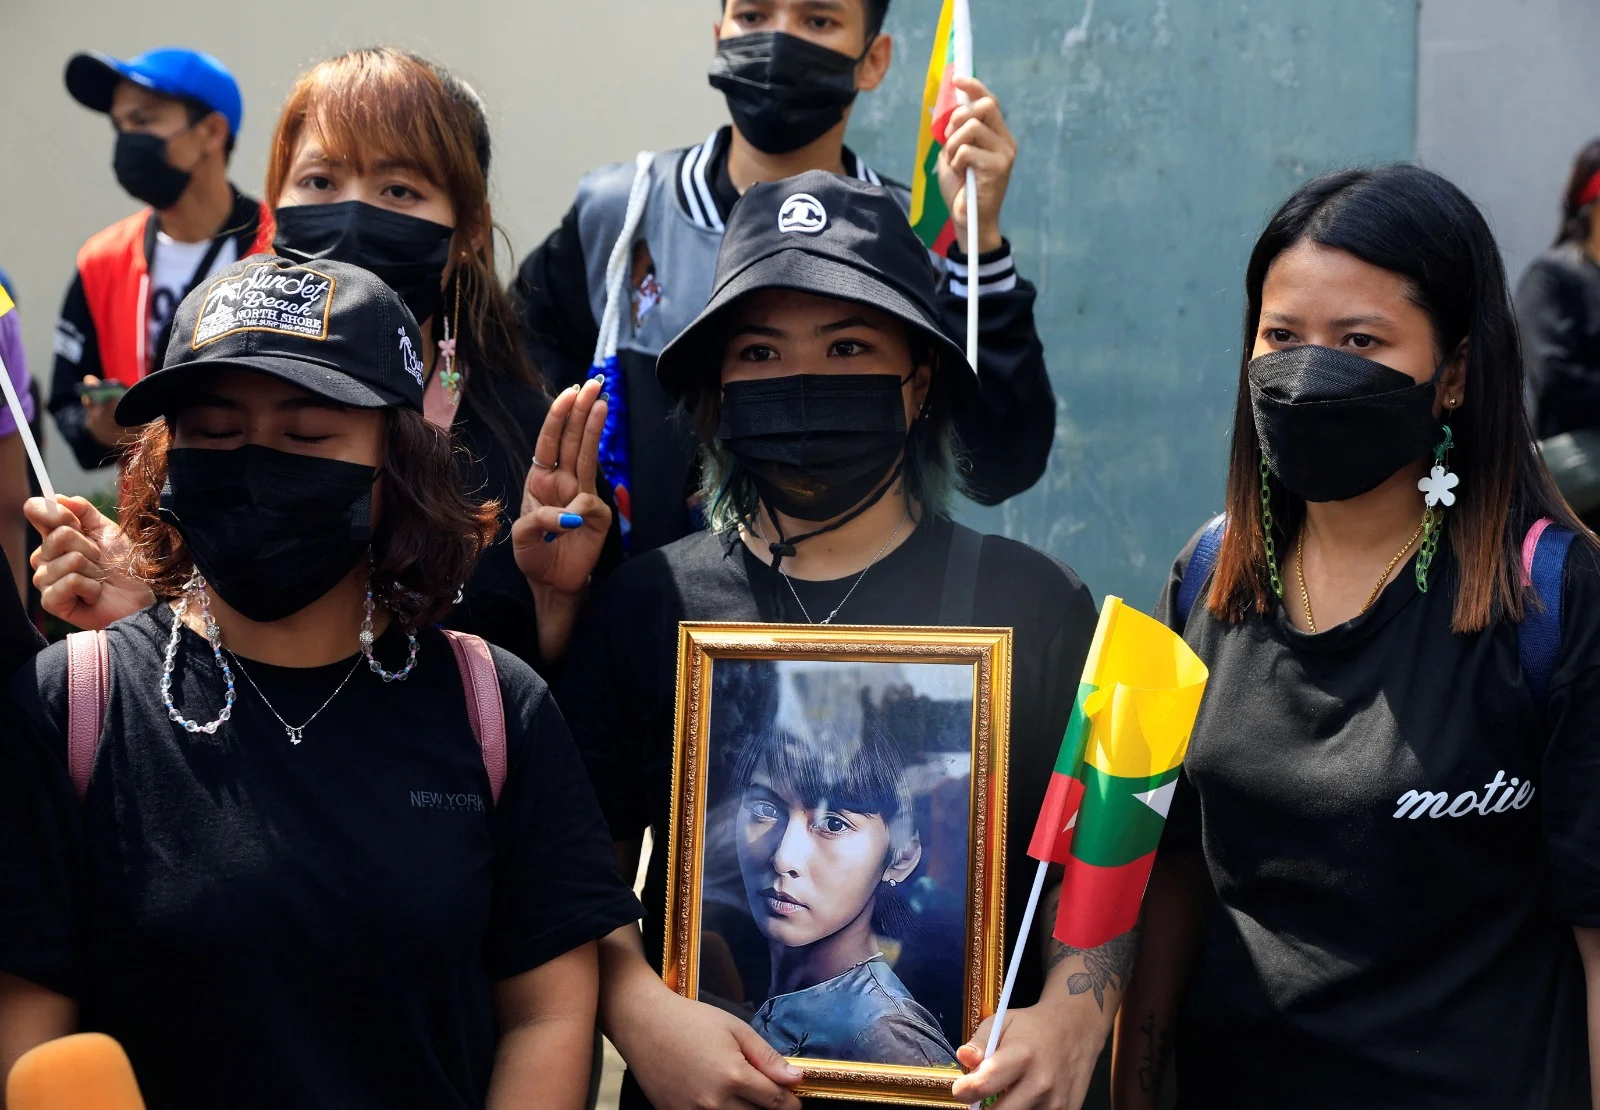 הפגנה למען מנהיגת מיאנמר לשעבר אונג סן סו צ'י